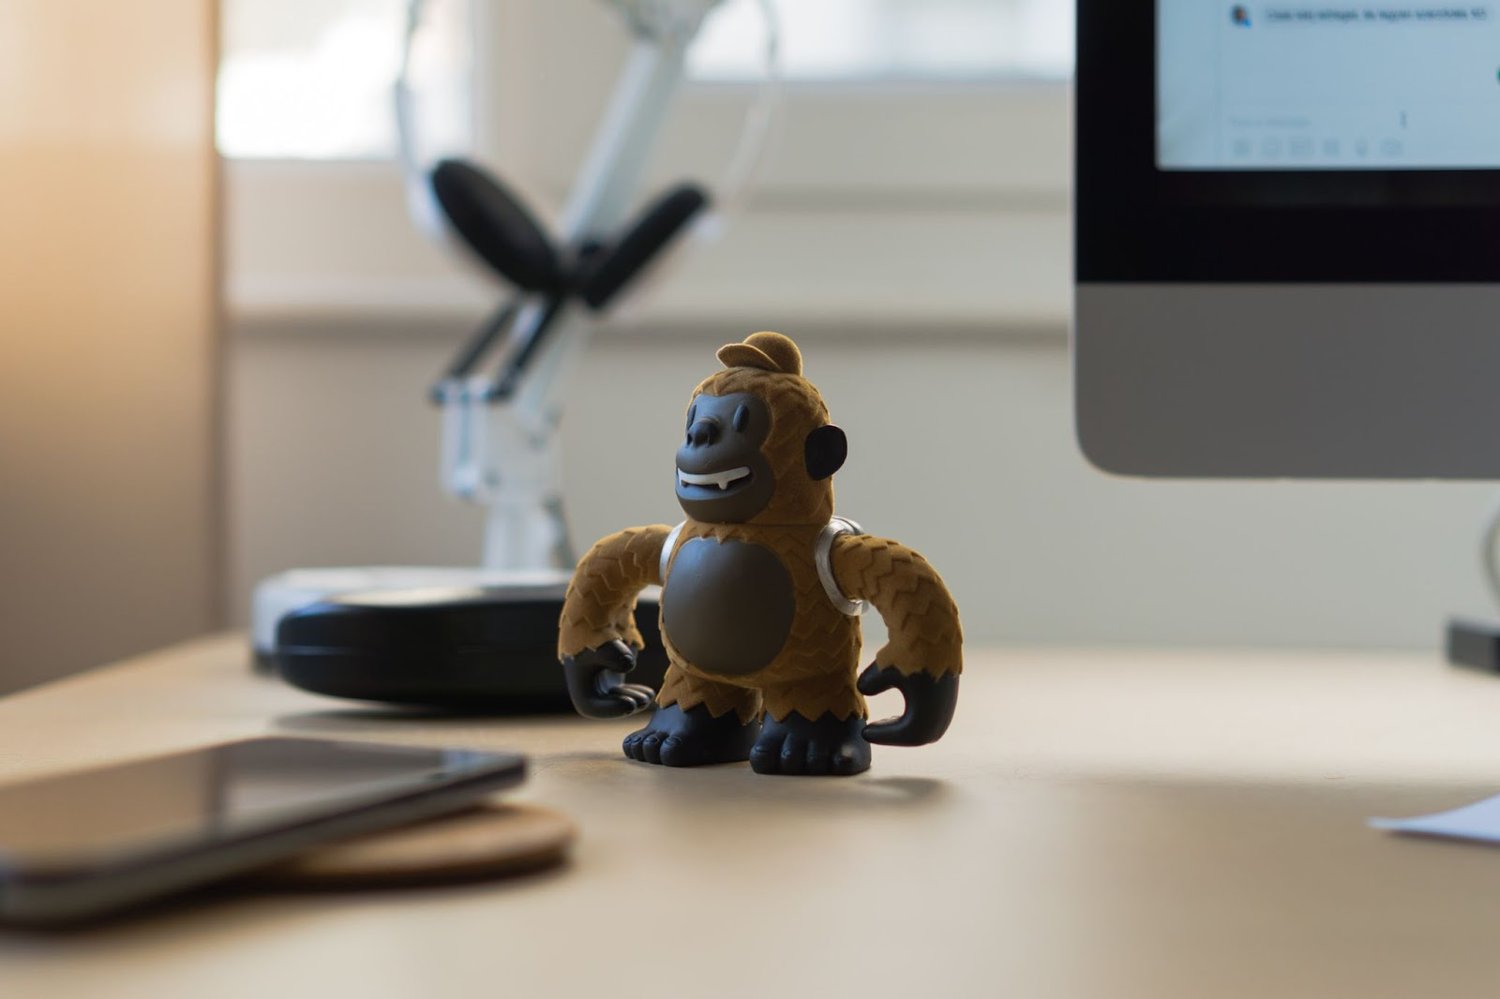 MailChimp figurine on office desk